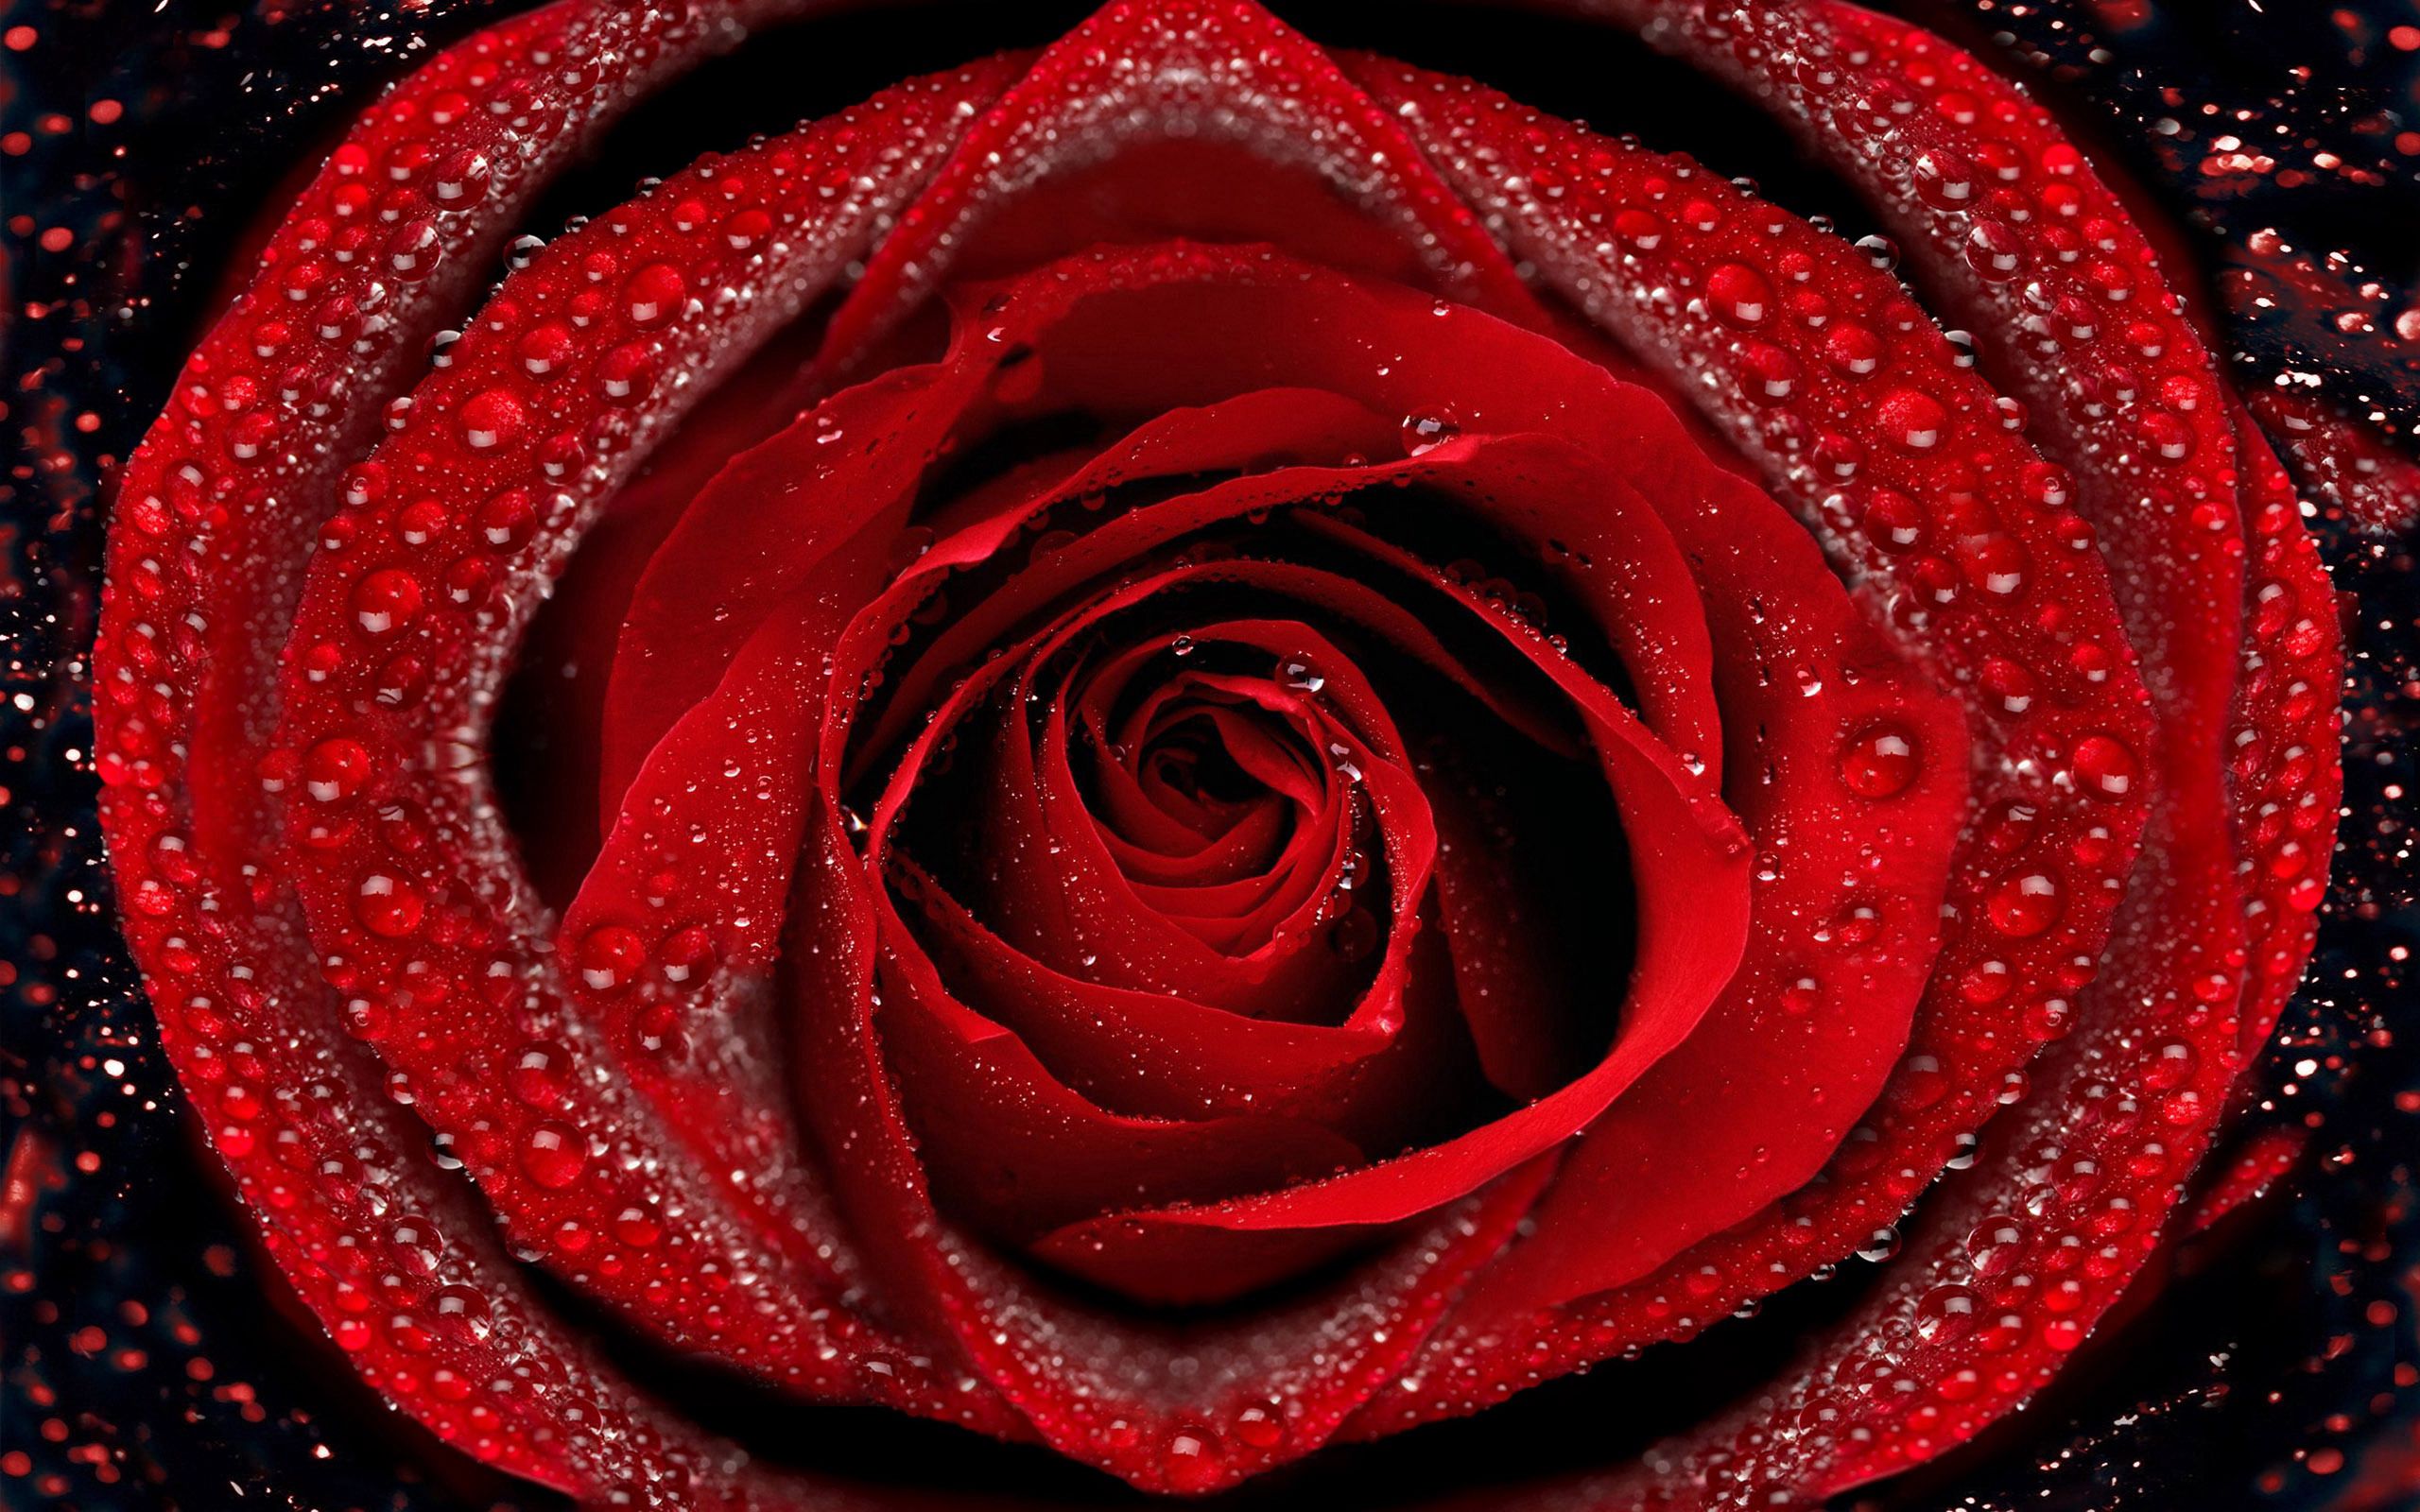 rose flower, petals, rose, drops, macro, dew